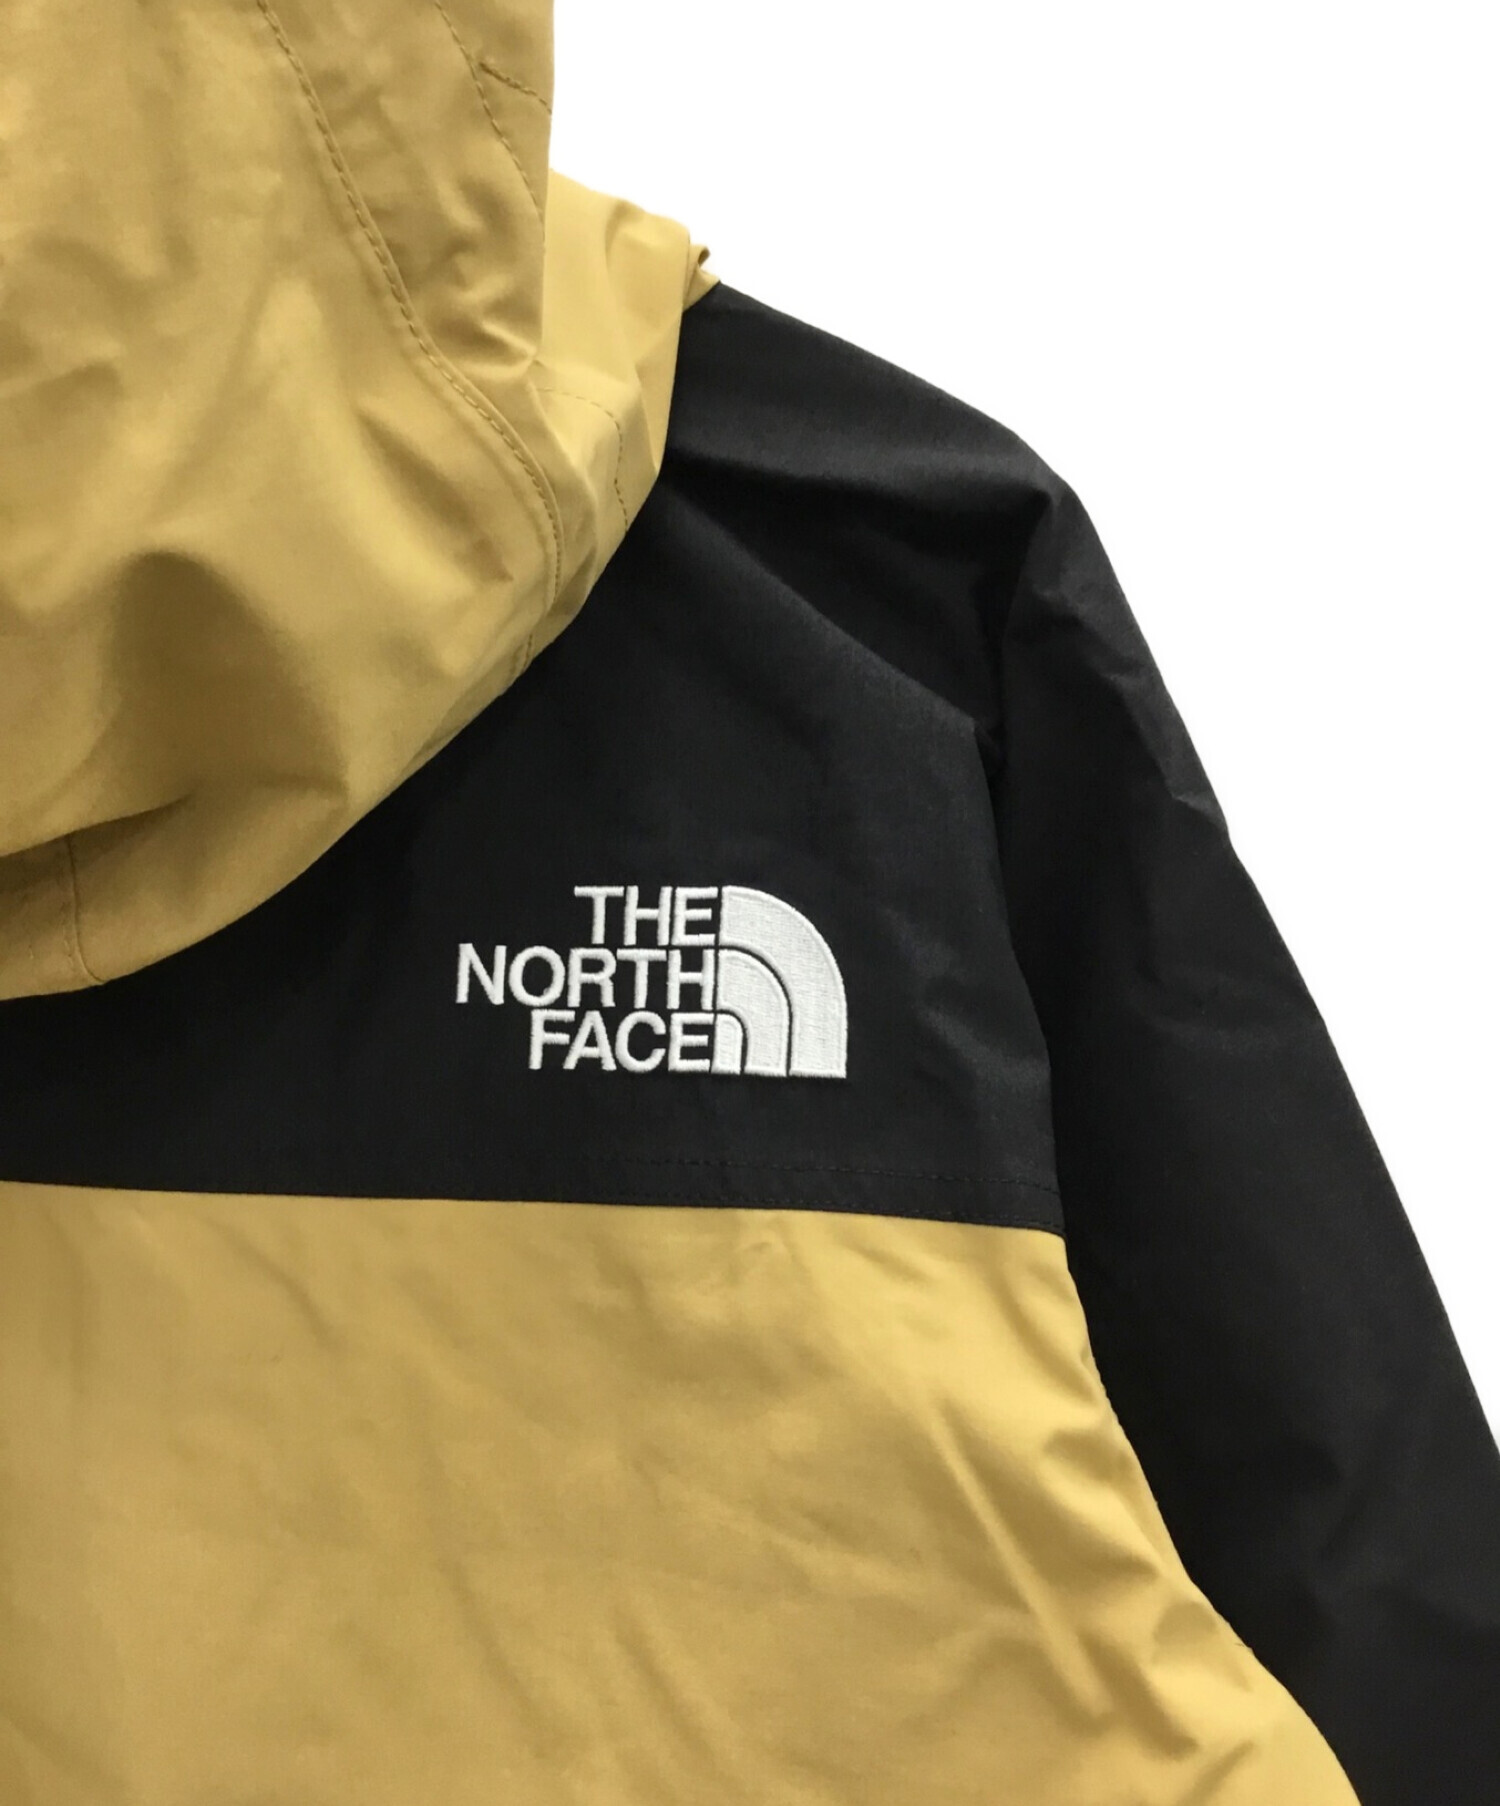 THE NORTH FACE (ザ ノース フェイス) マウンテンライトジャケット ベージュ サイズ:M 未使用品